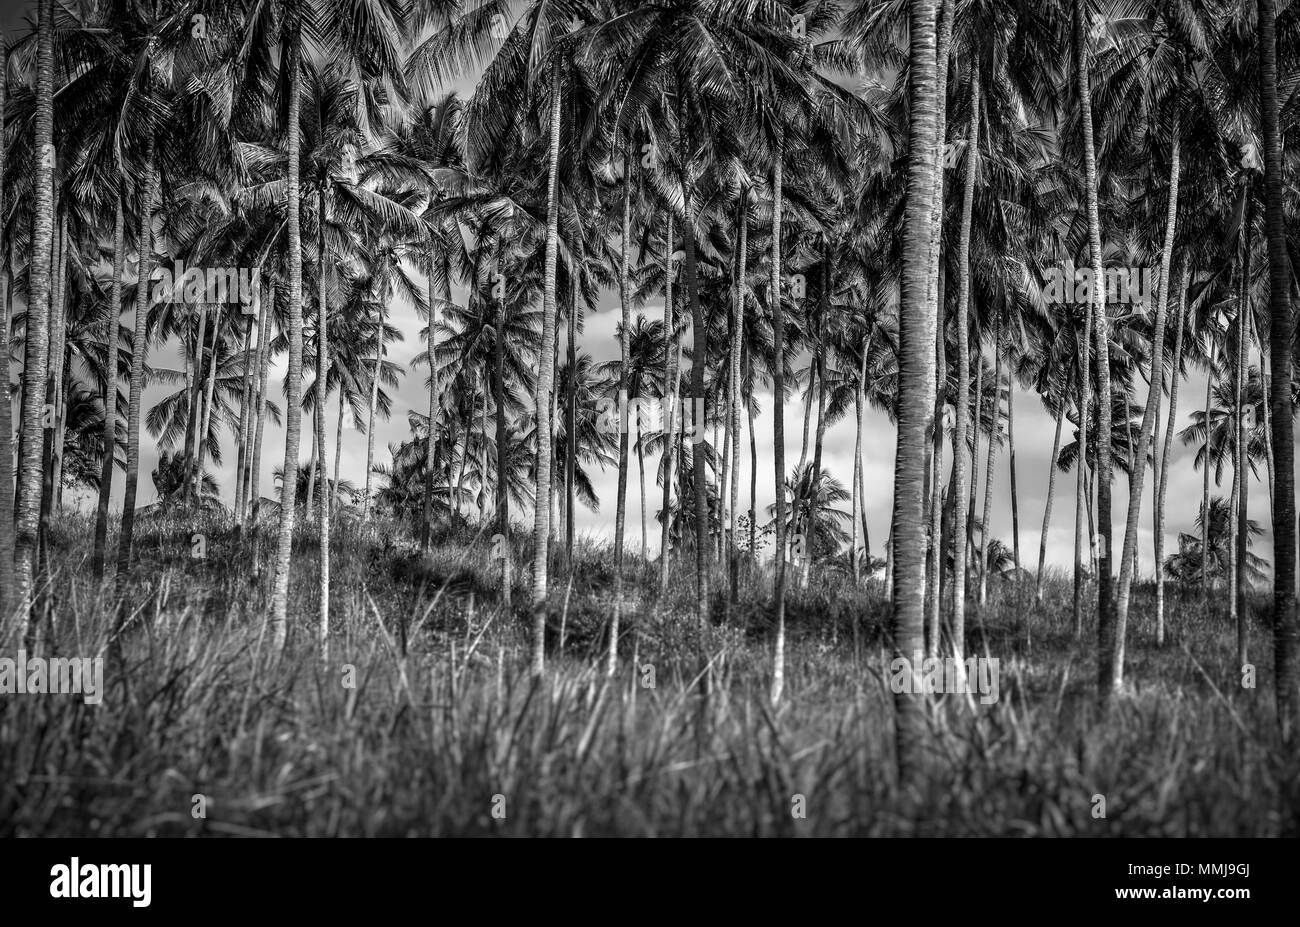 Photo en noir et blanc d'une plantation de palmiers, de nombreux beaux arbres tropicaux, ferme exotique sur le Sri Lanka, l'île tropicale Banque D'Images